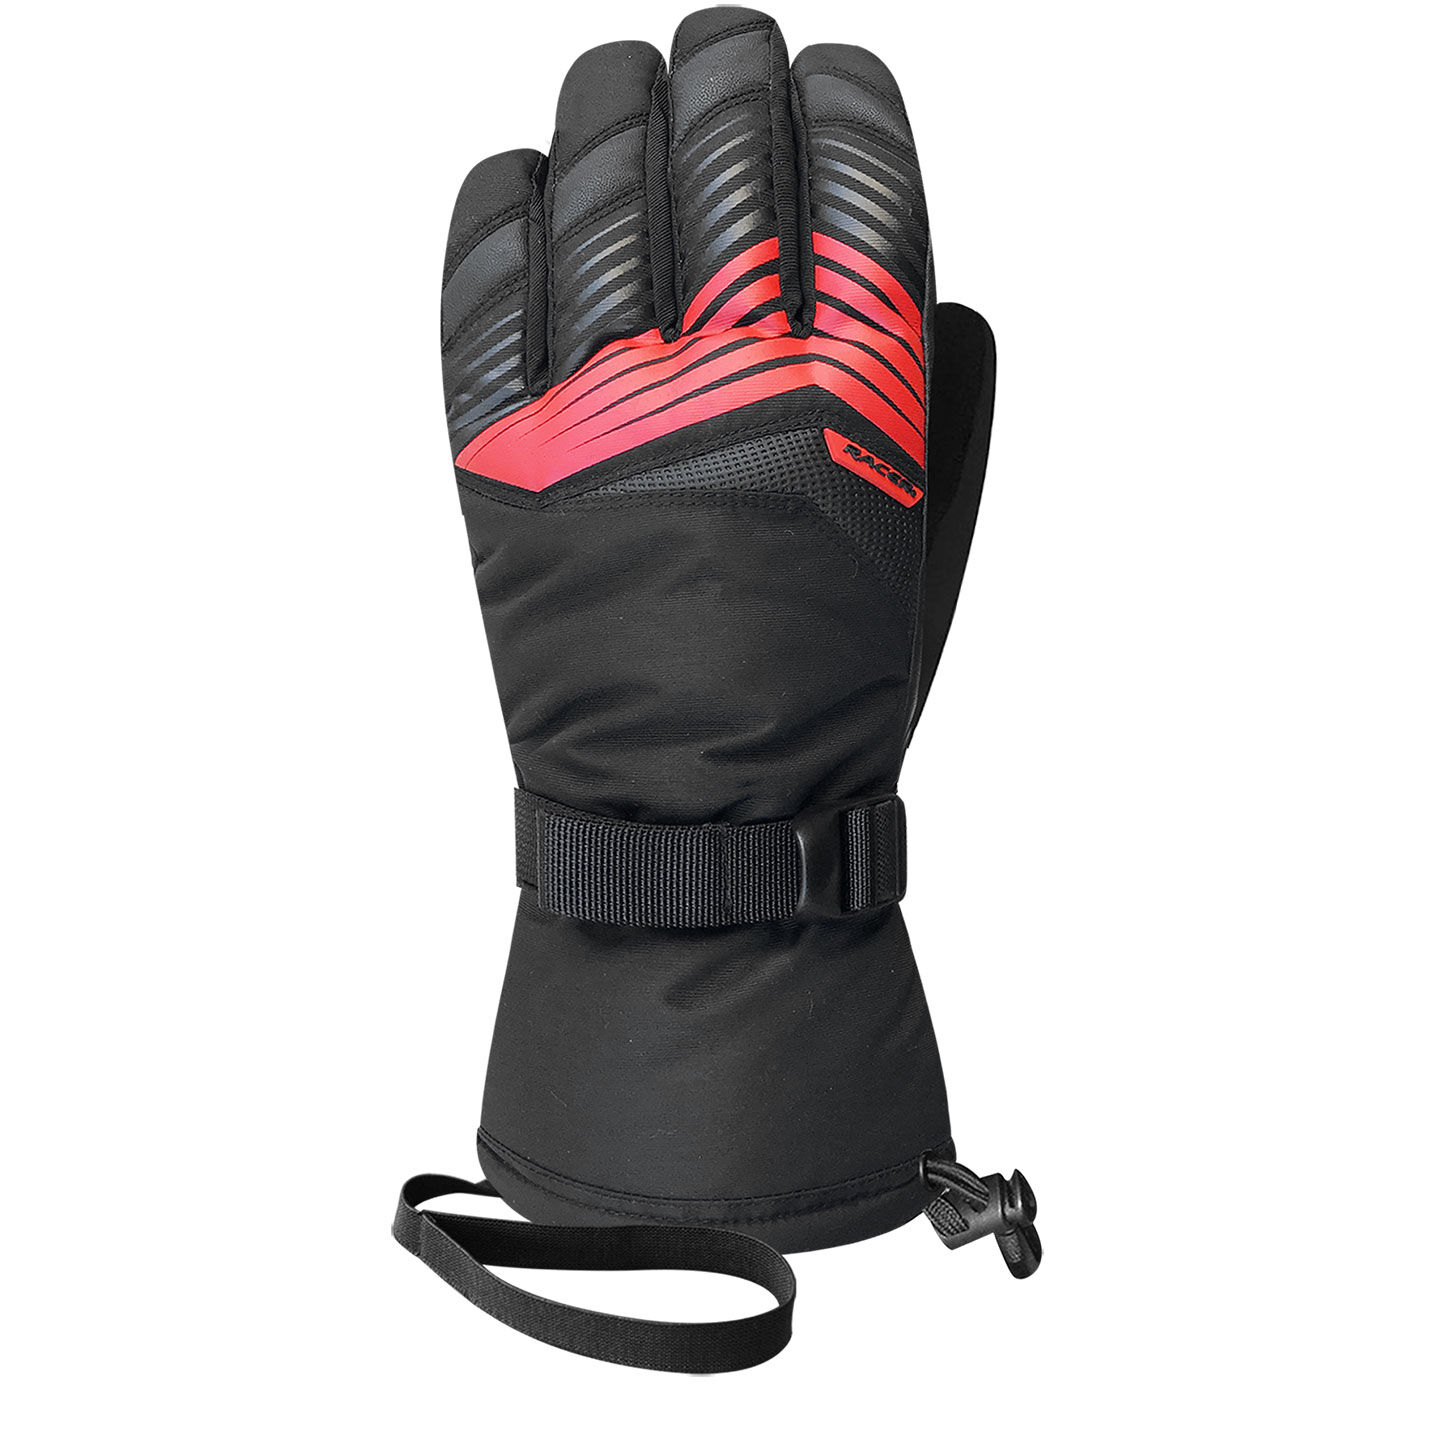 Racer - Logic 2 - Gloves - Men's